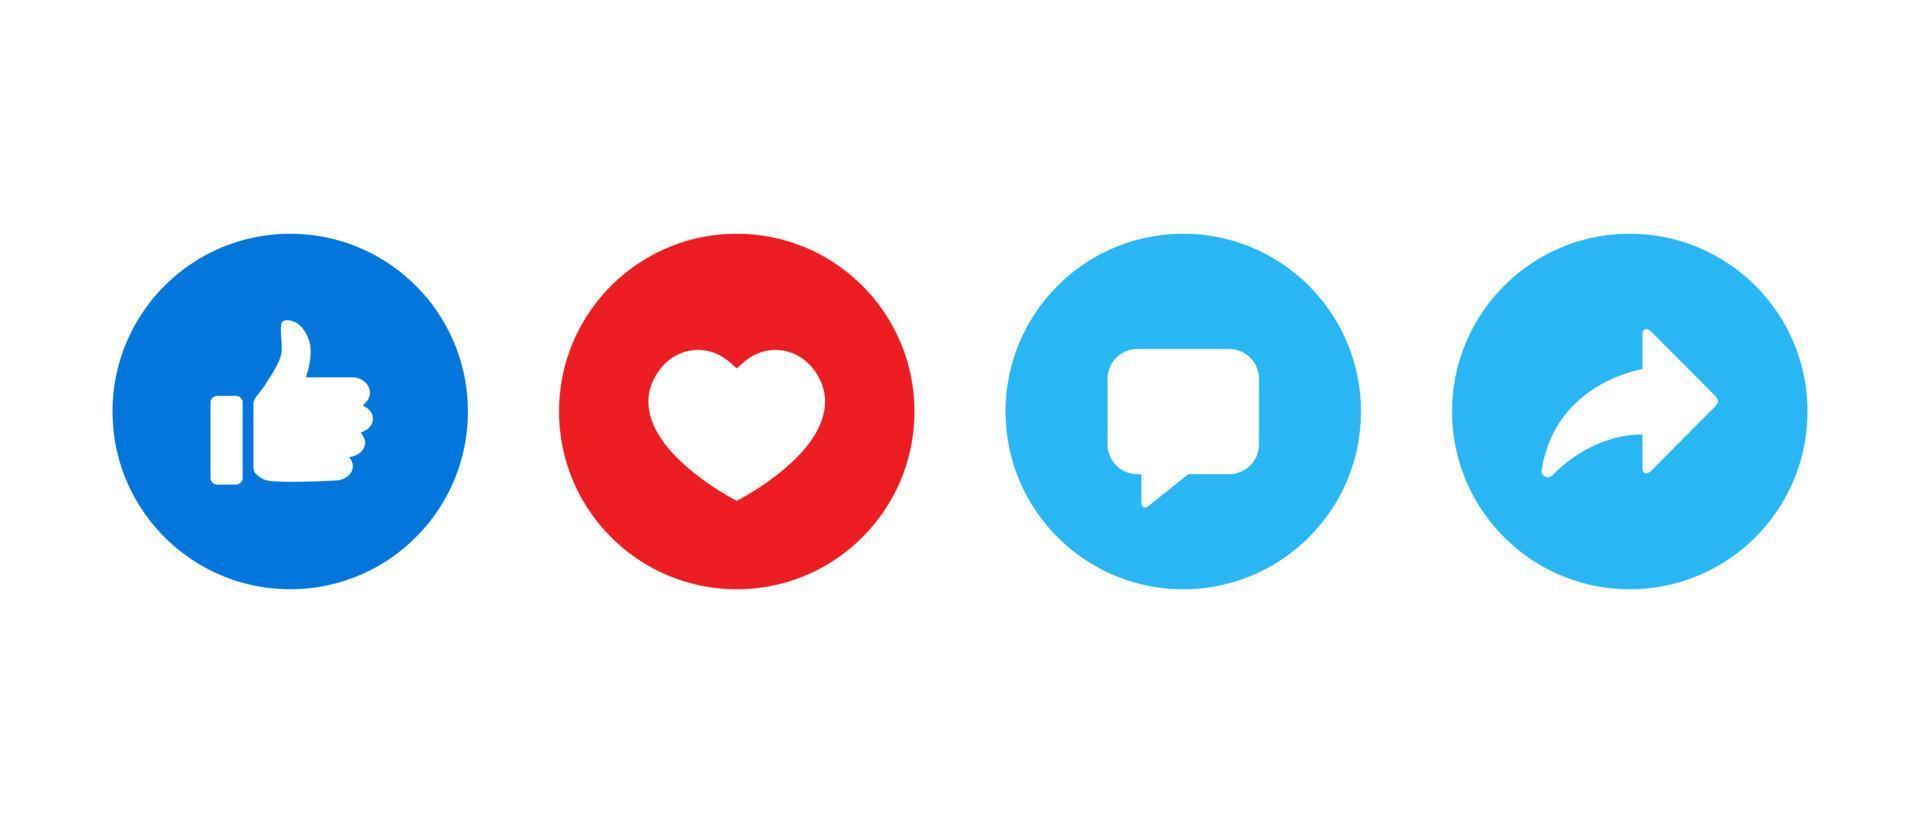 tycka om, kärlek, kommentar, och dela med sig ikon vektor. social media element vektor